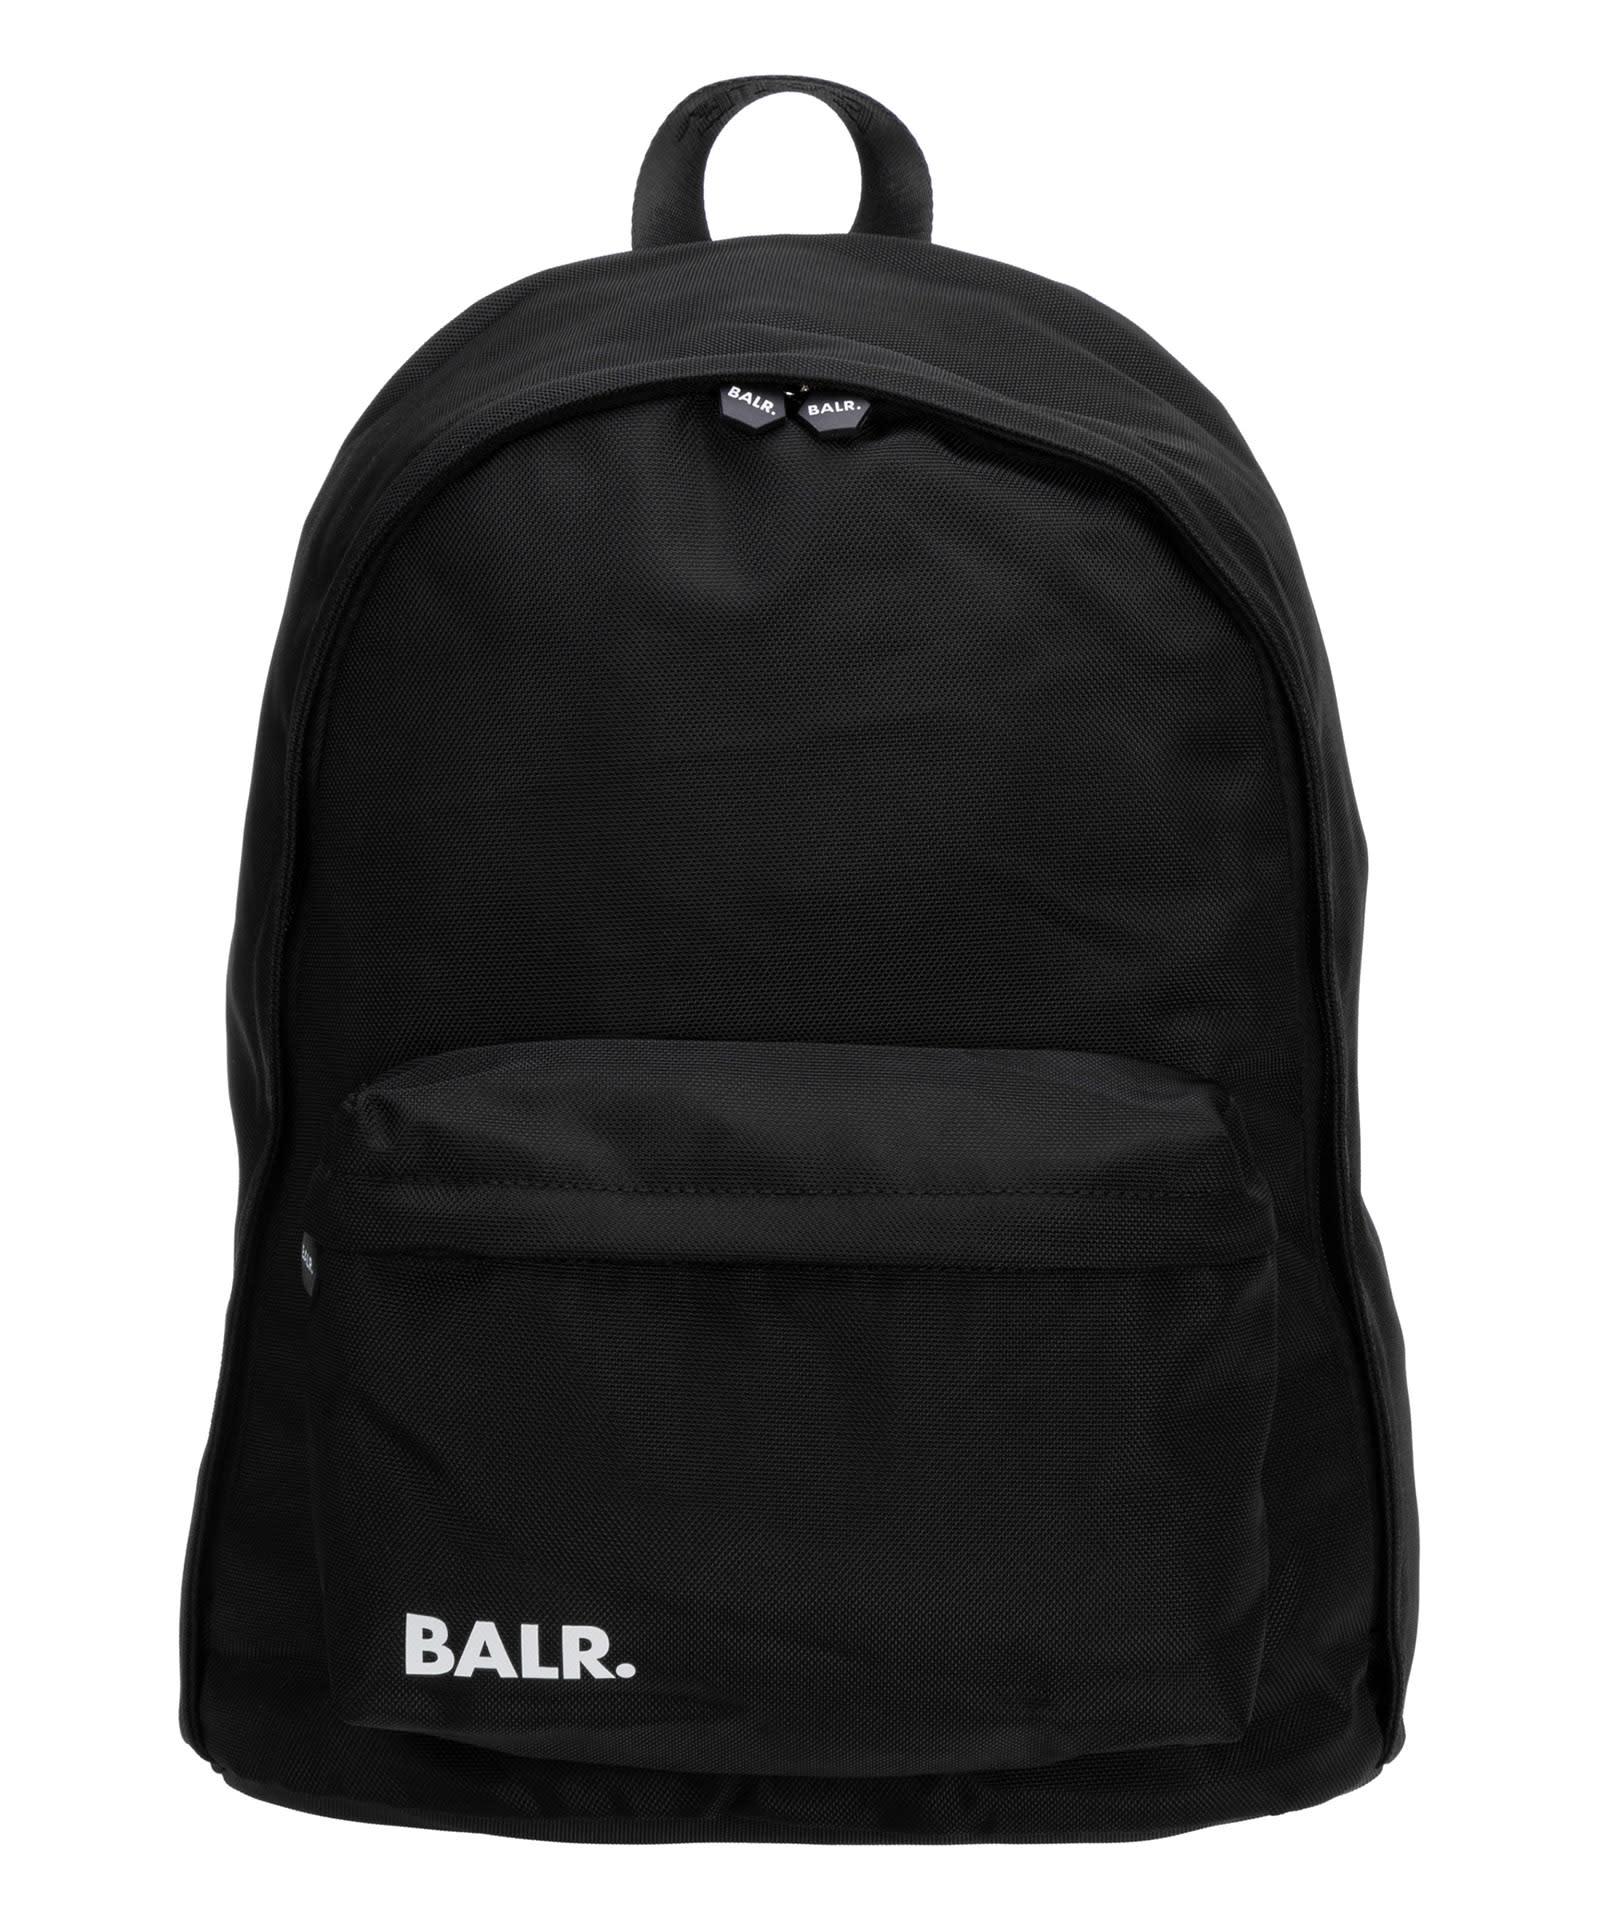 BALR. U-series Leather Backpack